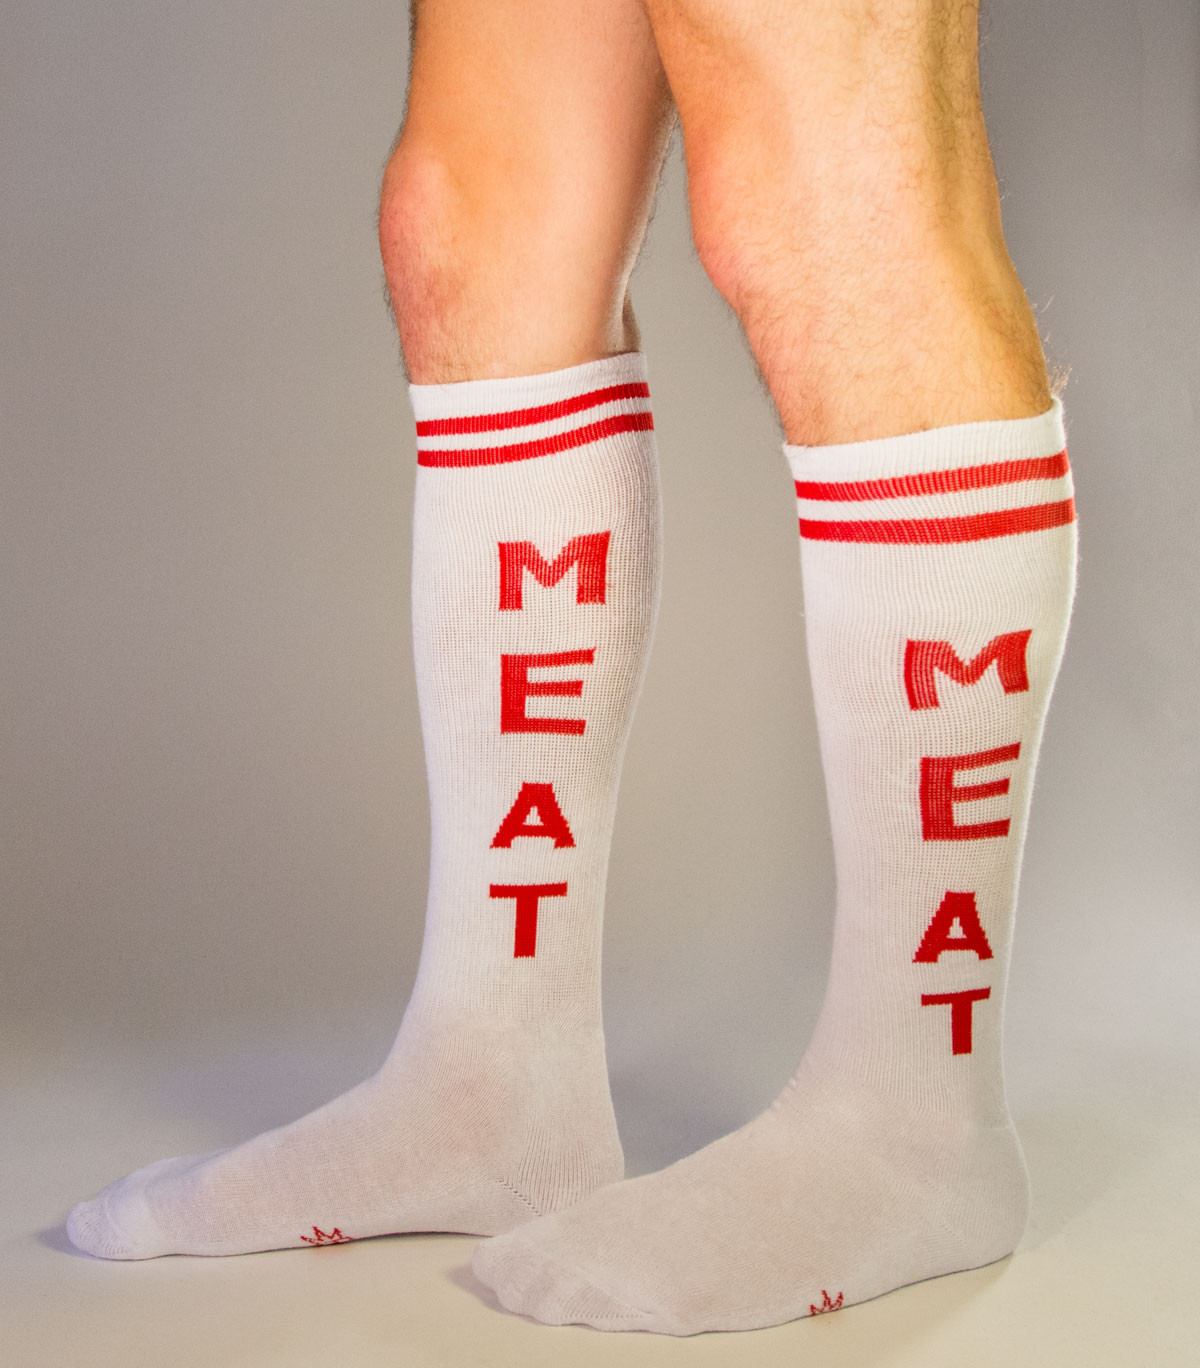 lianji Funny Socks Pork Meat Bacon Socks Low Cut Casual Ankle Couple Cotton Socks